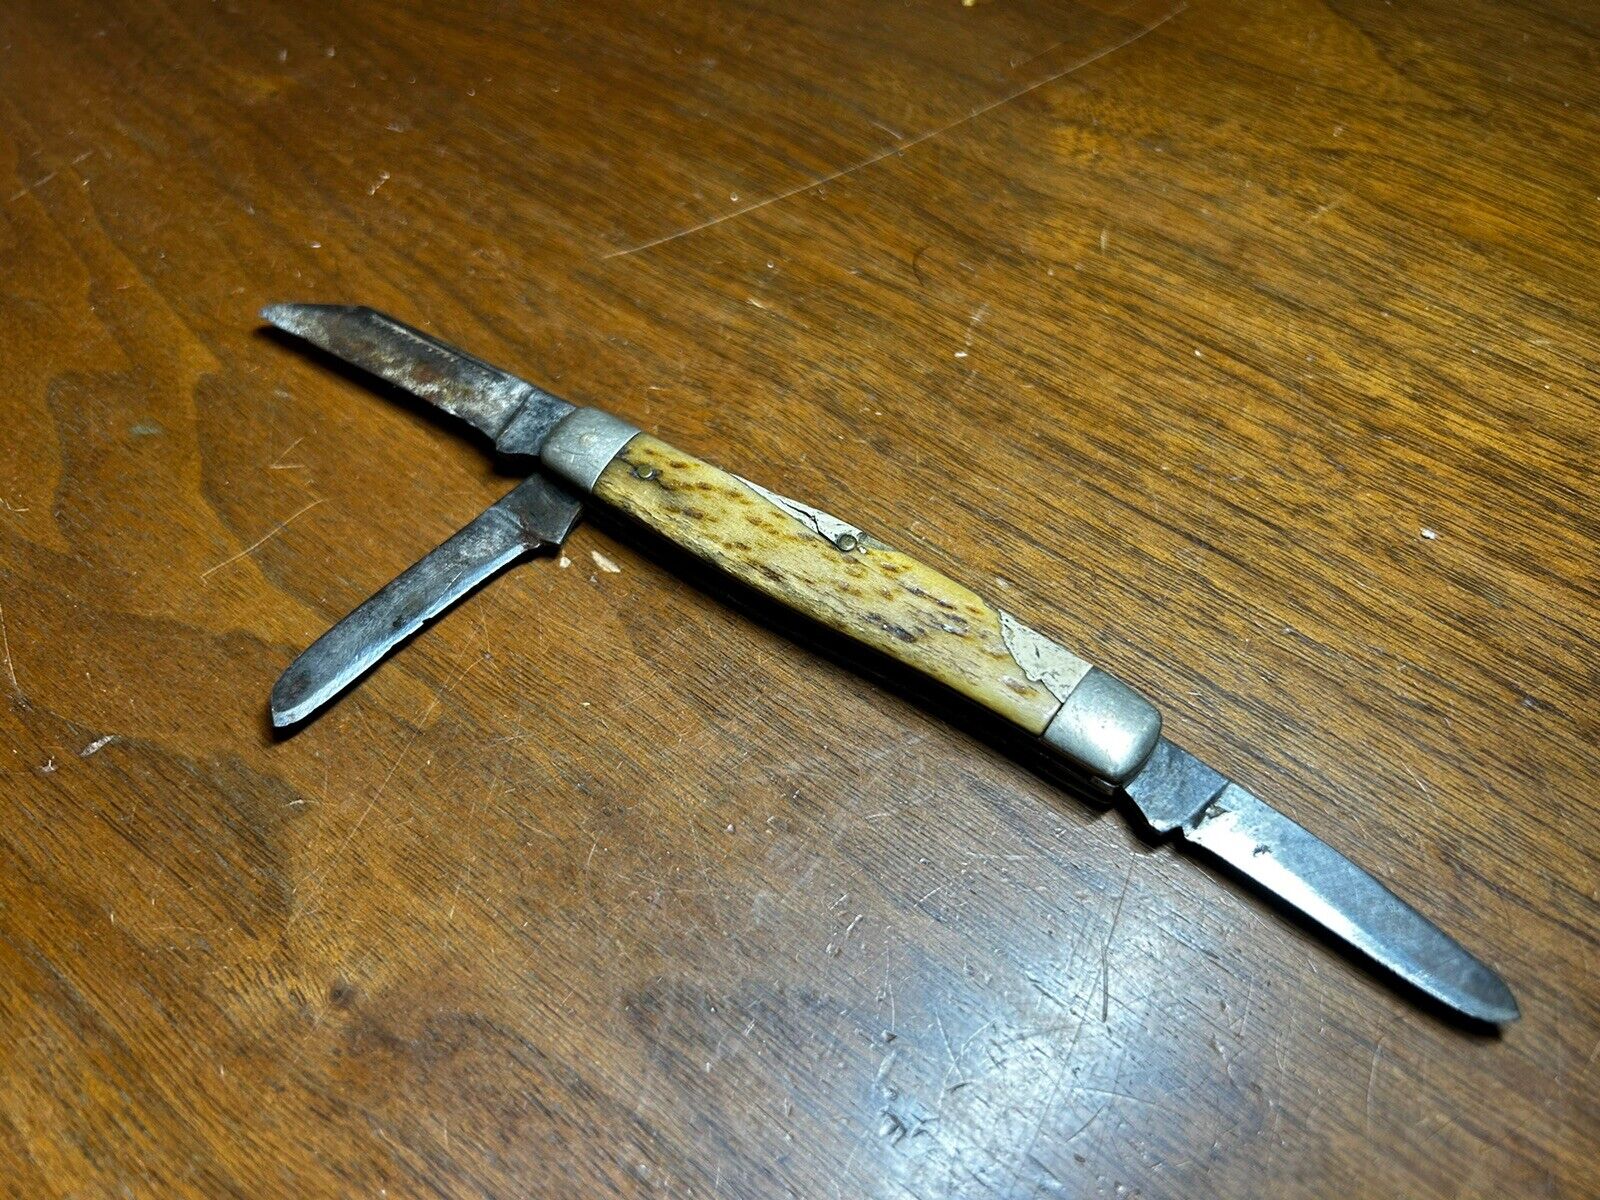 Old Vintage Antique Worn, Damaged Unknown Maker 3 Blade Pocketknife Pocket Knife